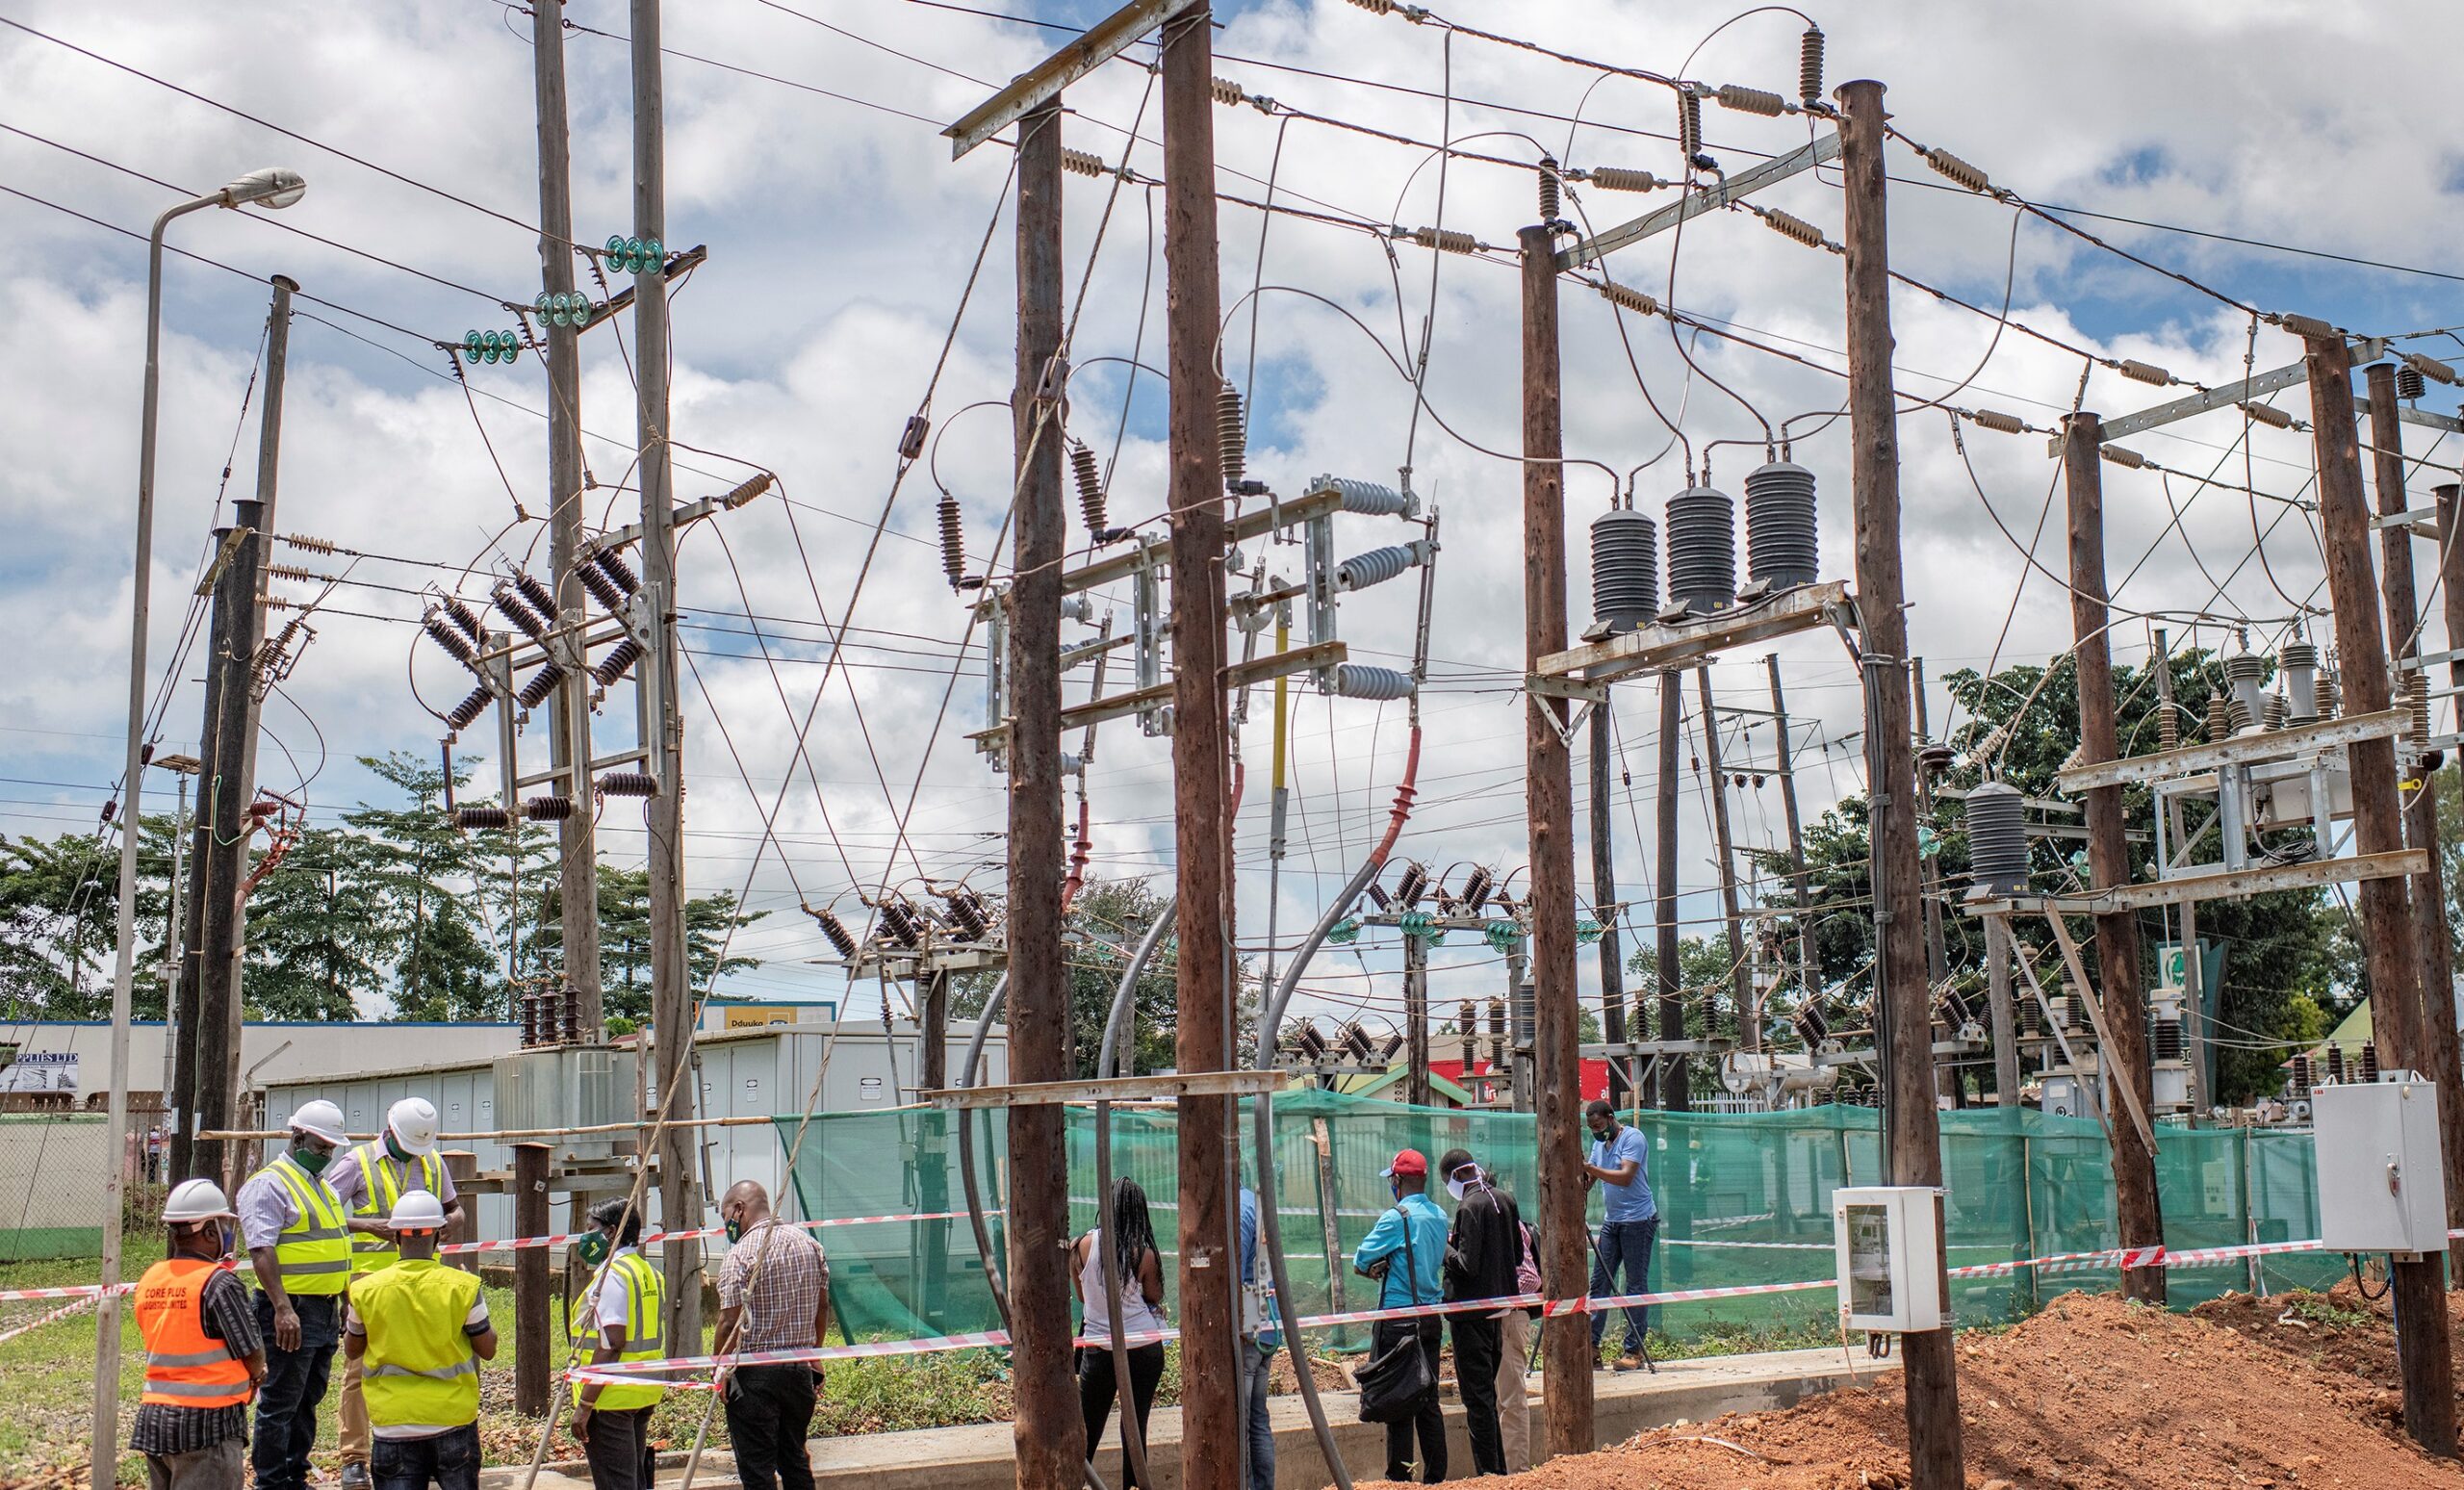 Umeme: The new upgraded Gulu substation